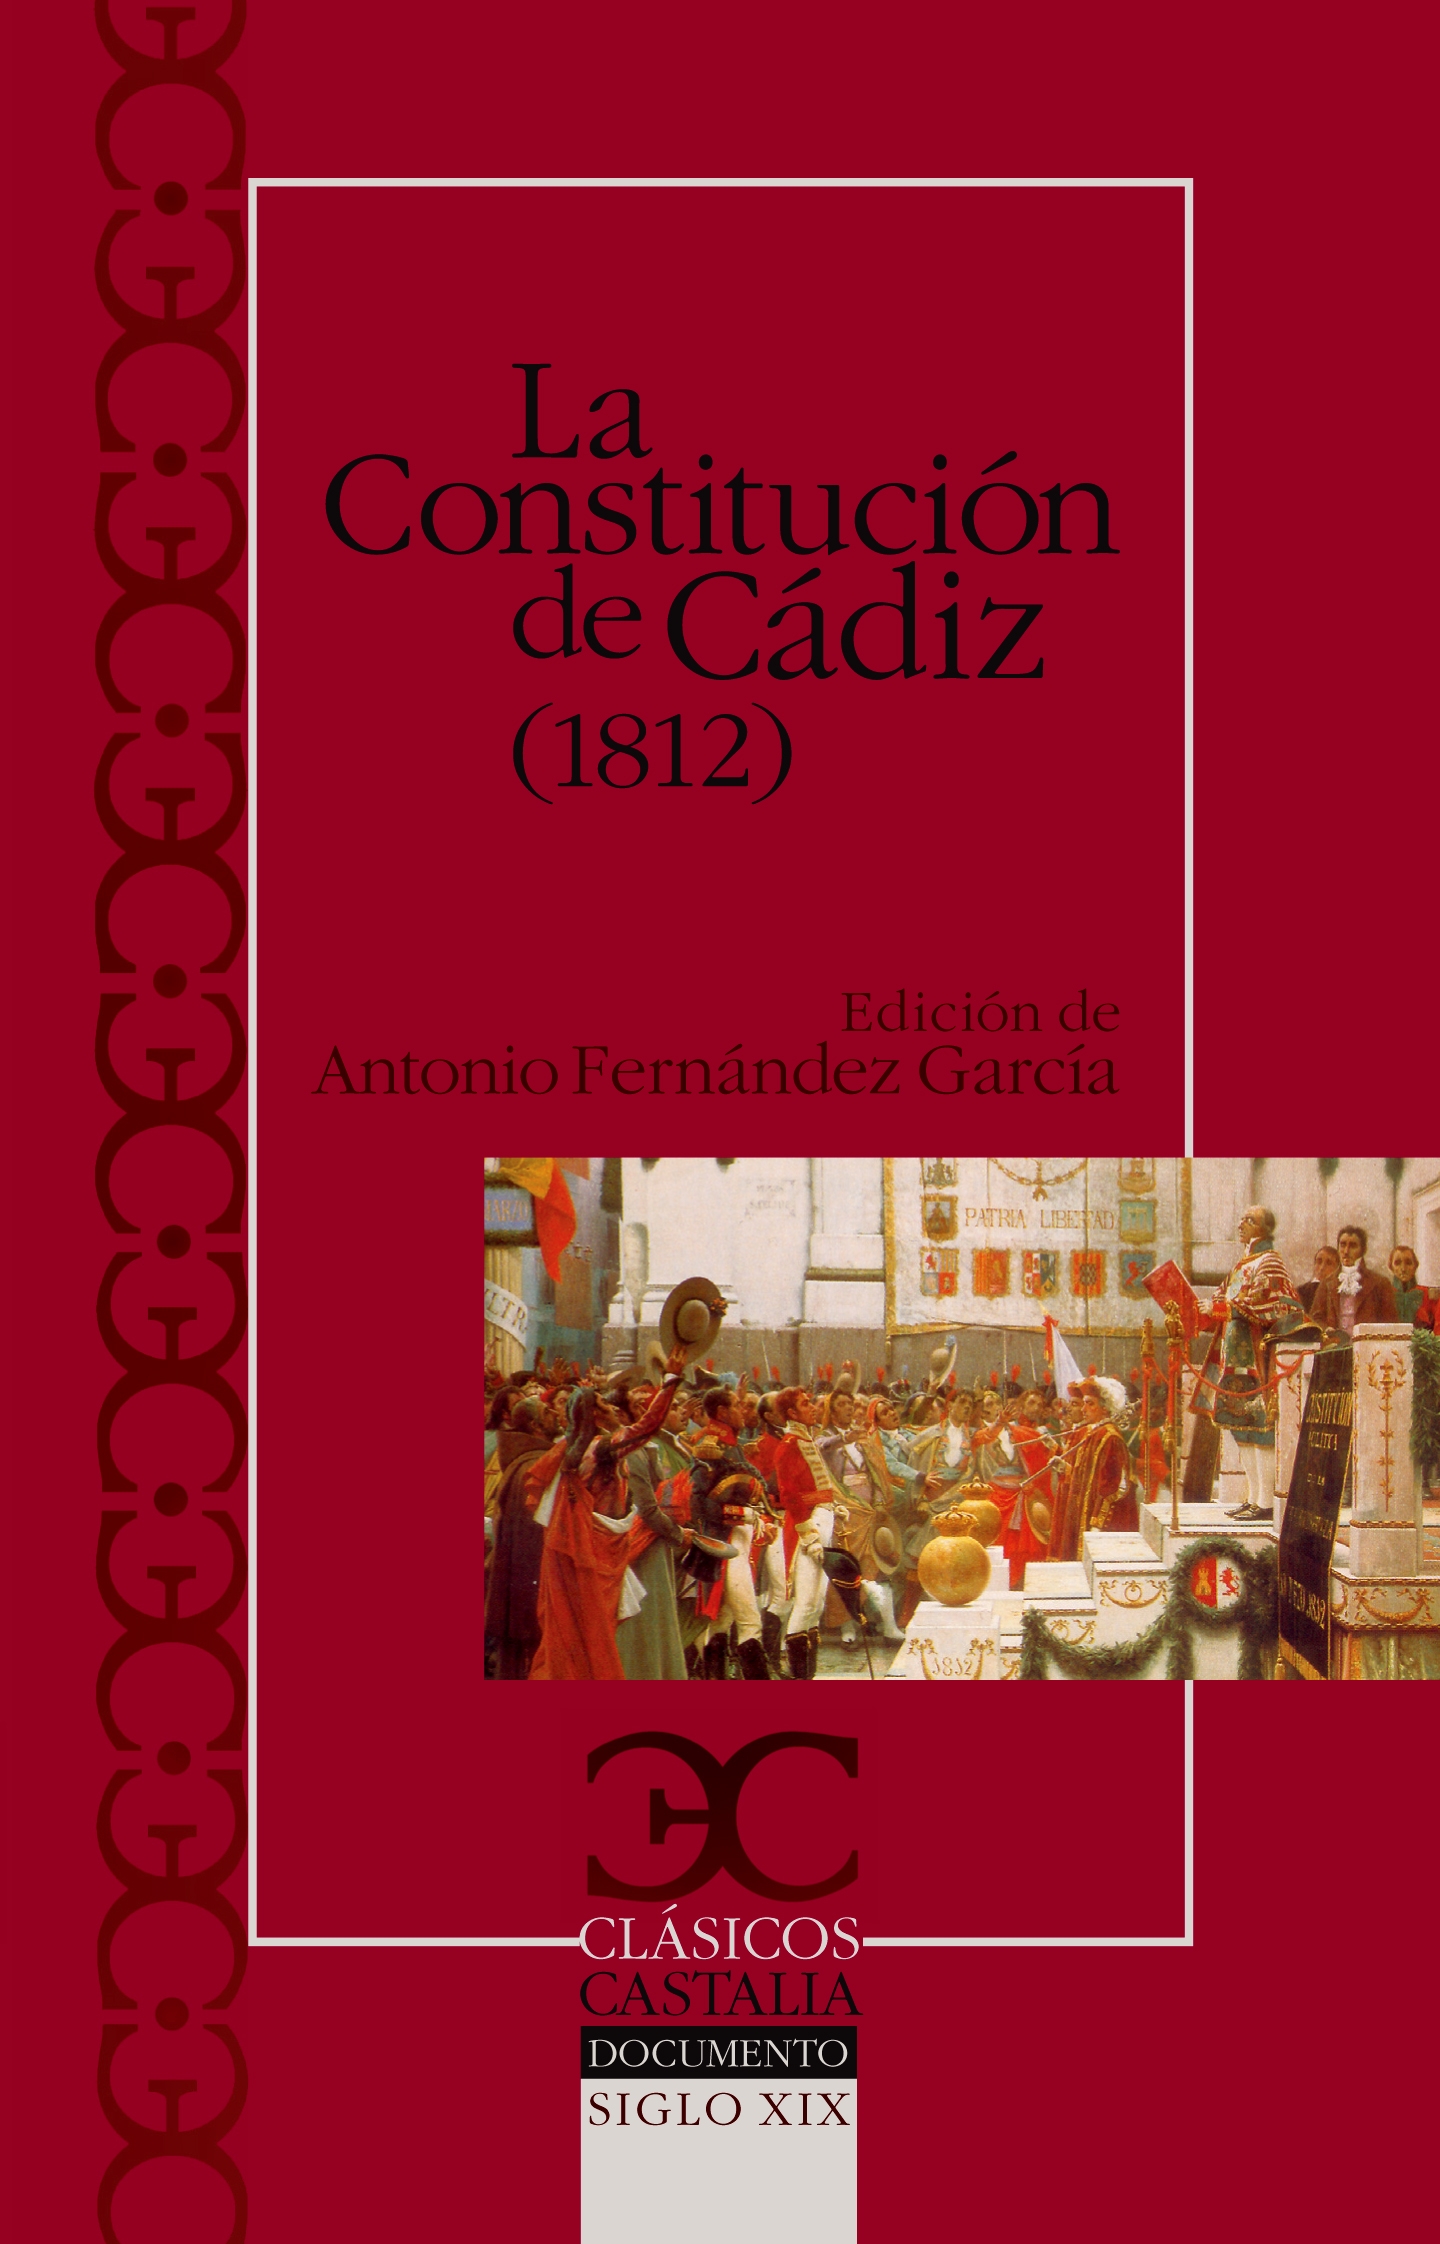 La Constitución de Cádiz (1812)